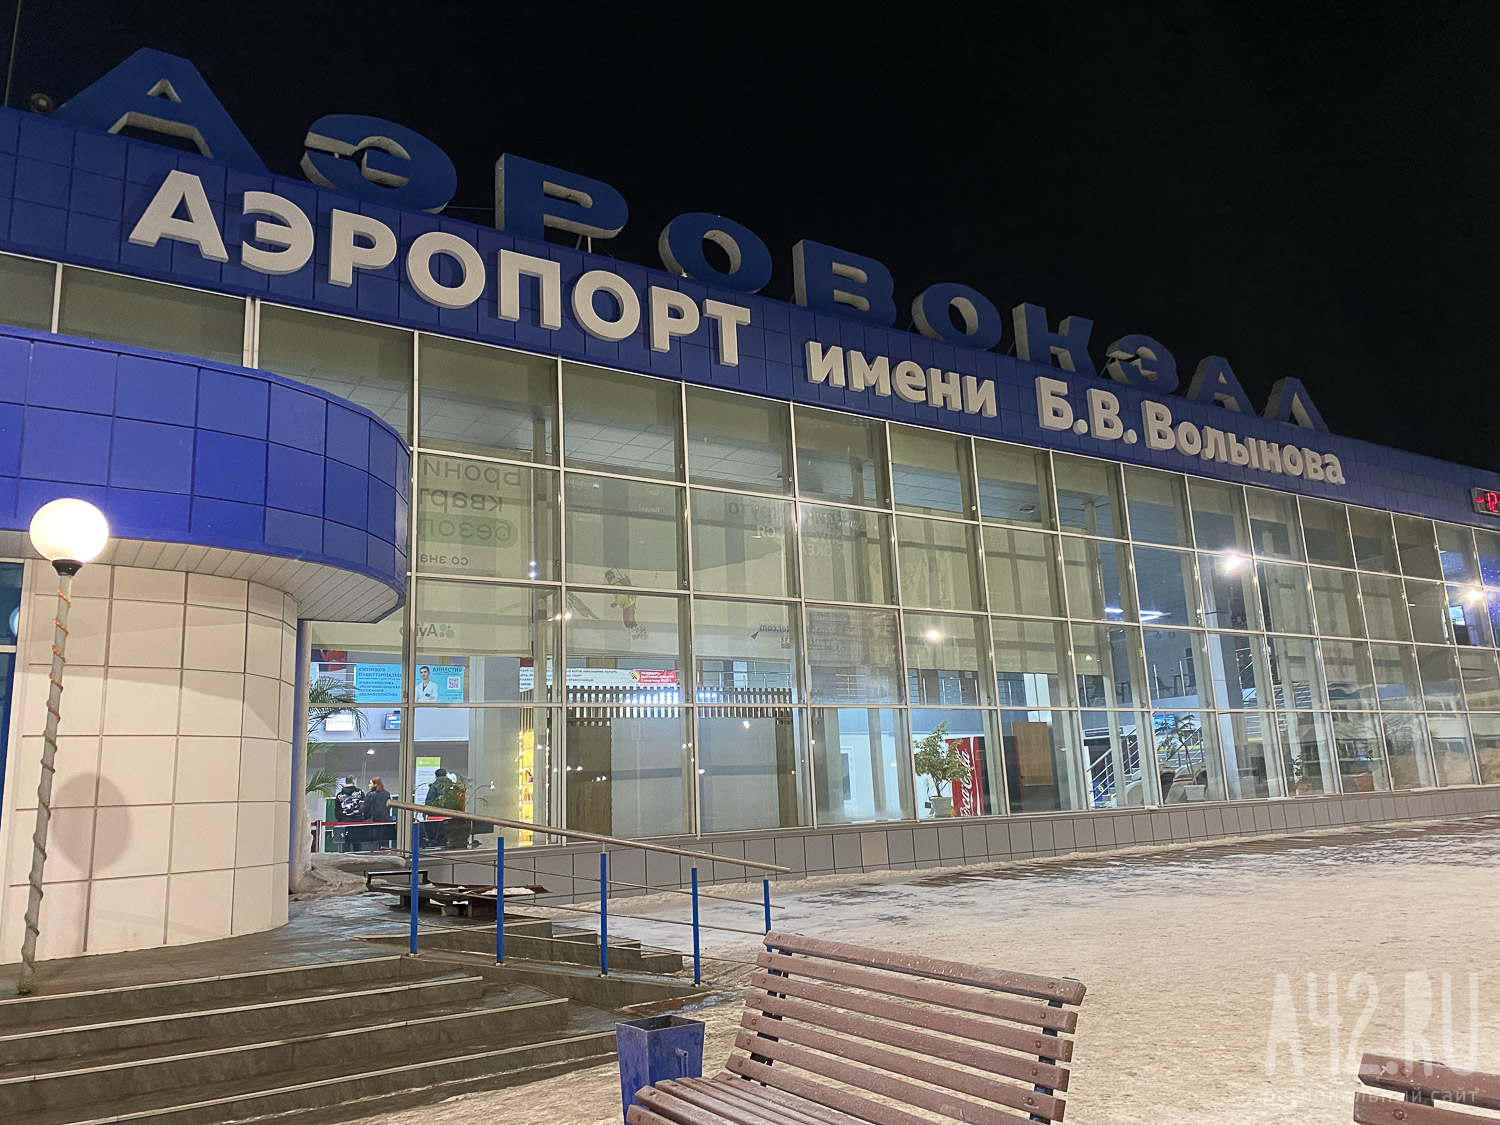 В Новокузнецке отменён авиарейс до Красноярска, полёт в Москву перенесён